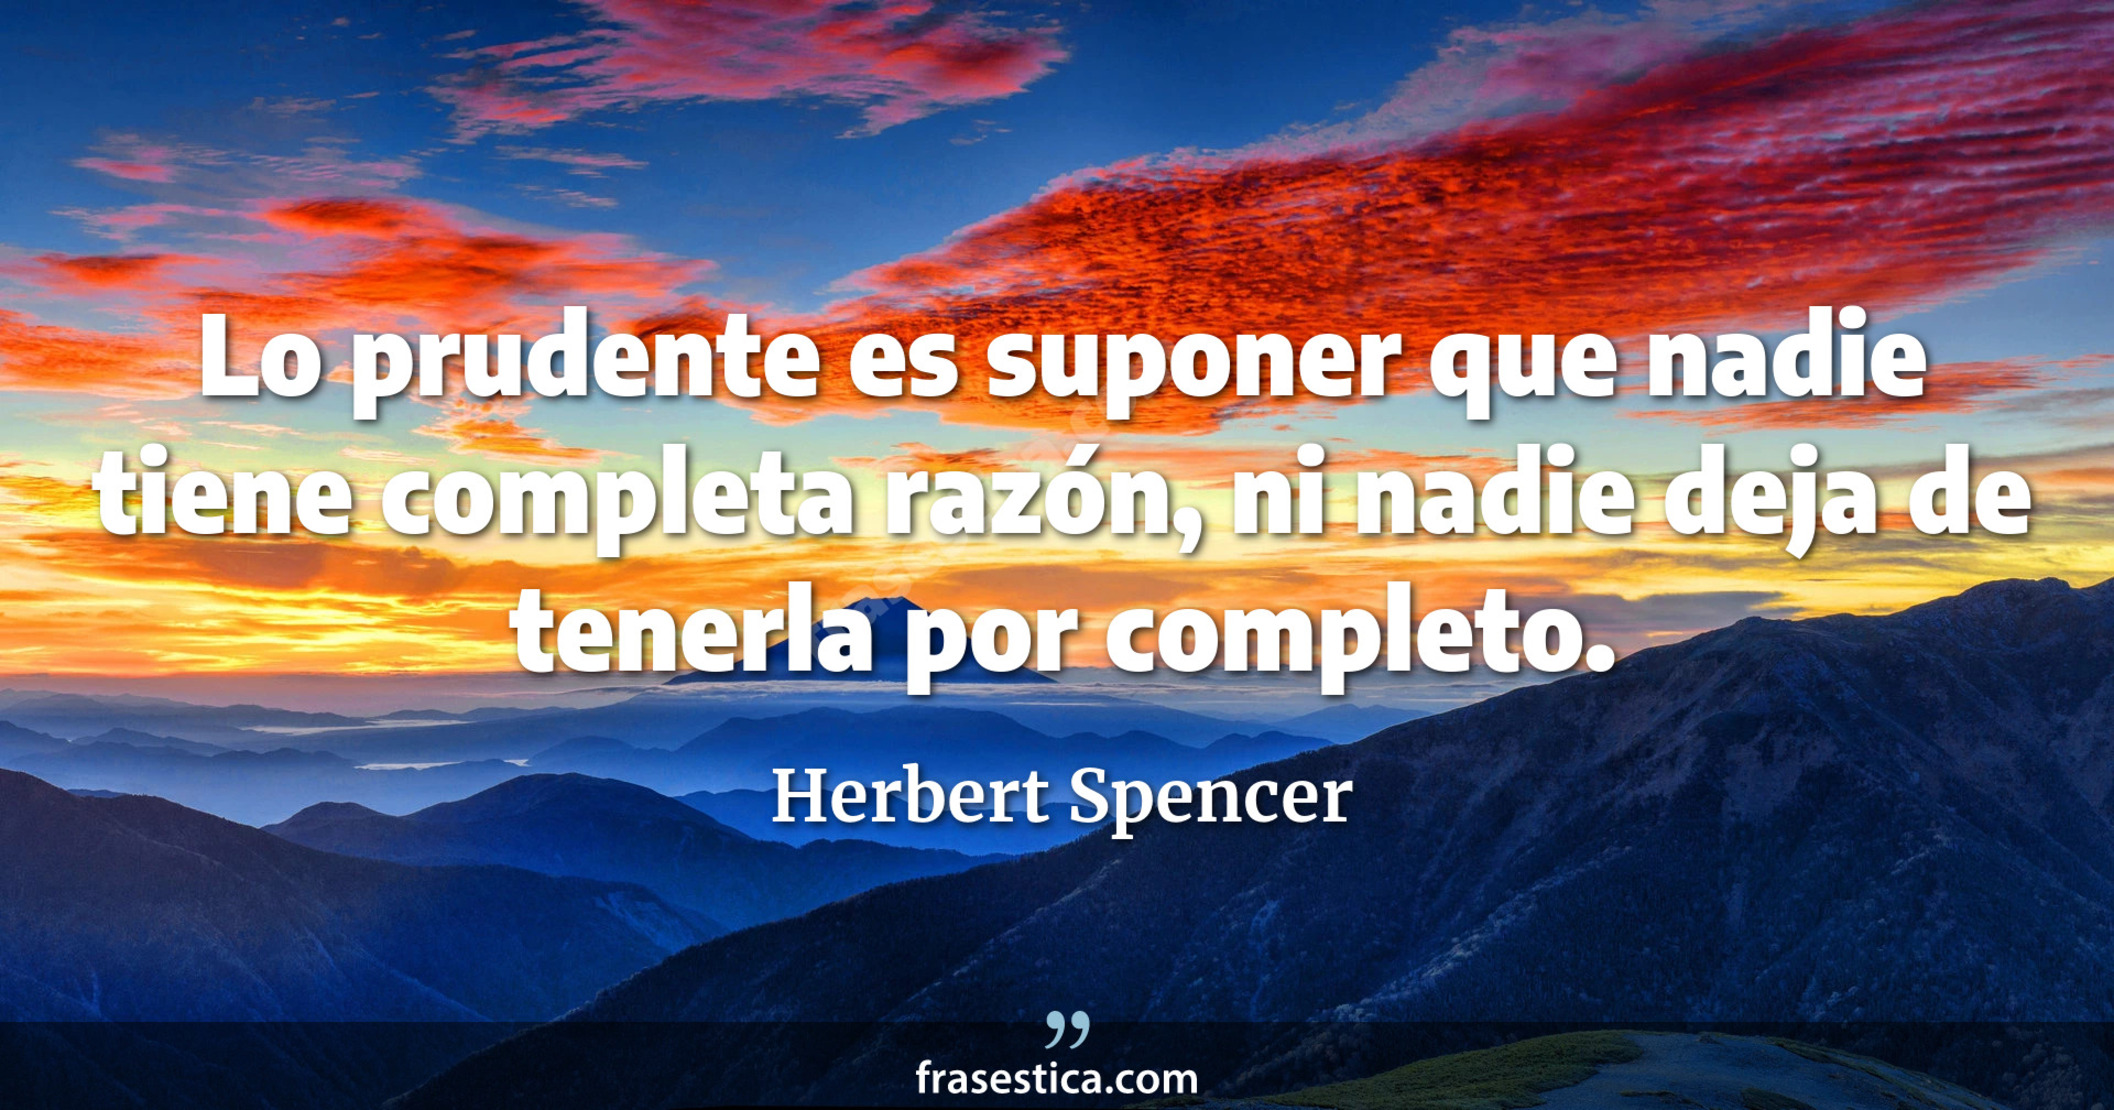 Lo prudente es suponer que nadie tiene completa razón, ni nadie deja de tenerla por completo. - Herbert Spencer